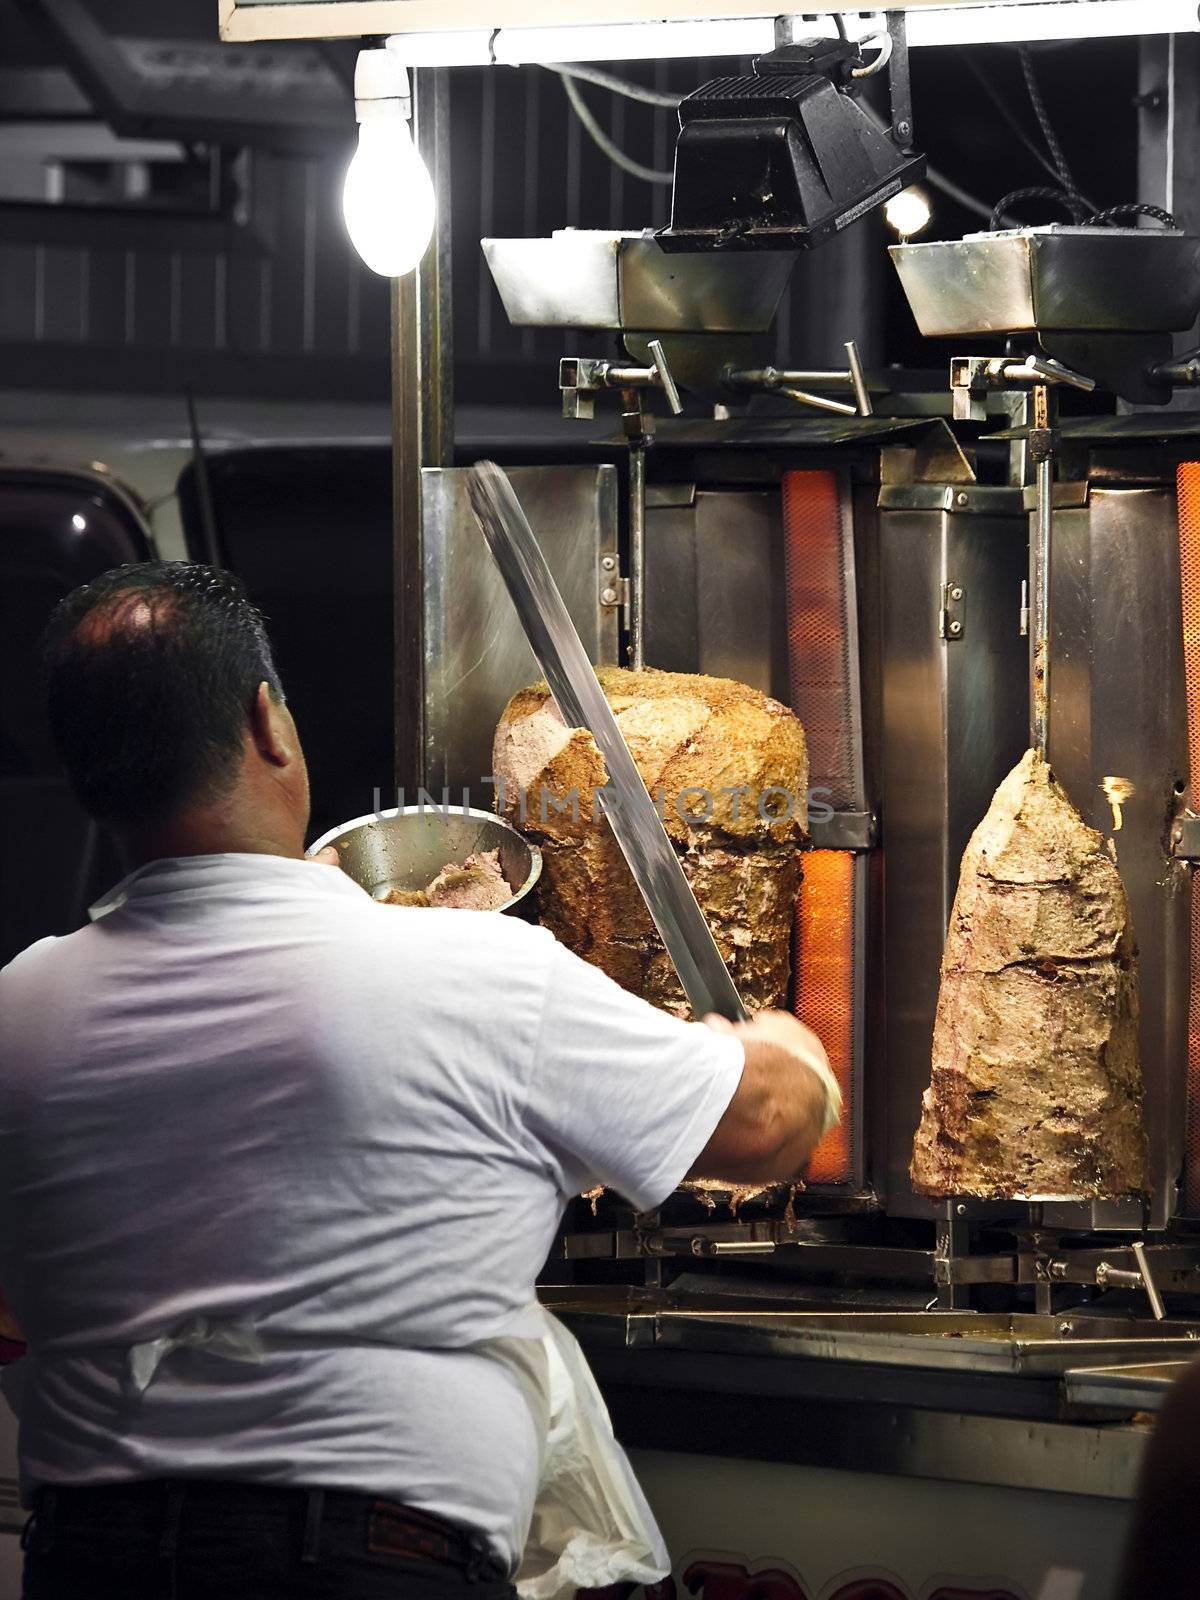 Roadside shish kebab kiosk vendor slicing freshly cooked meat